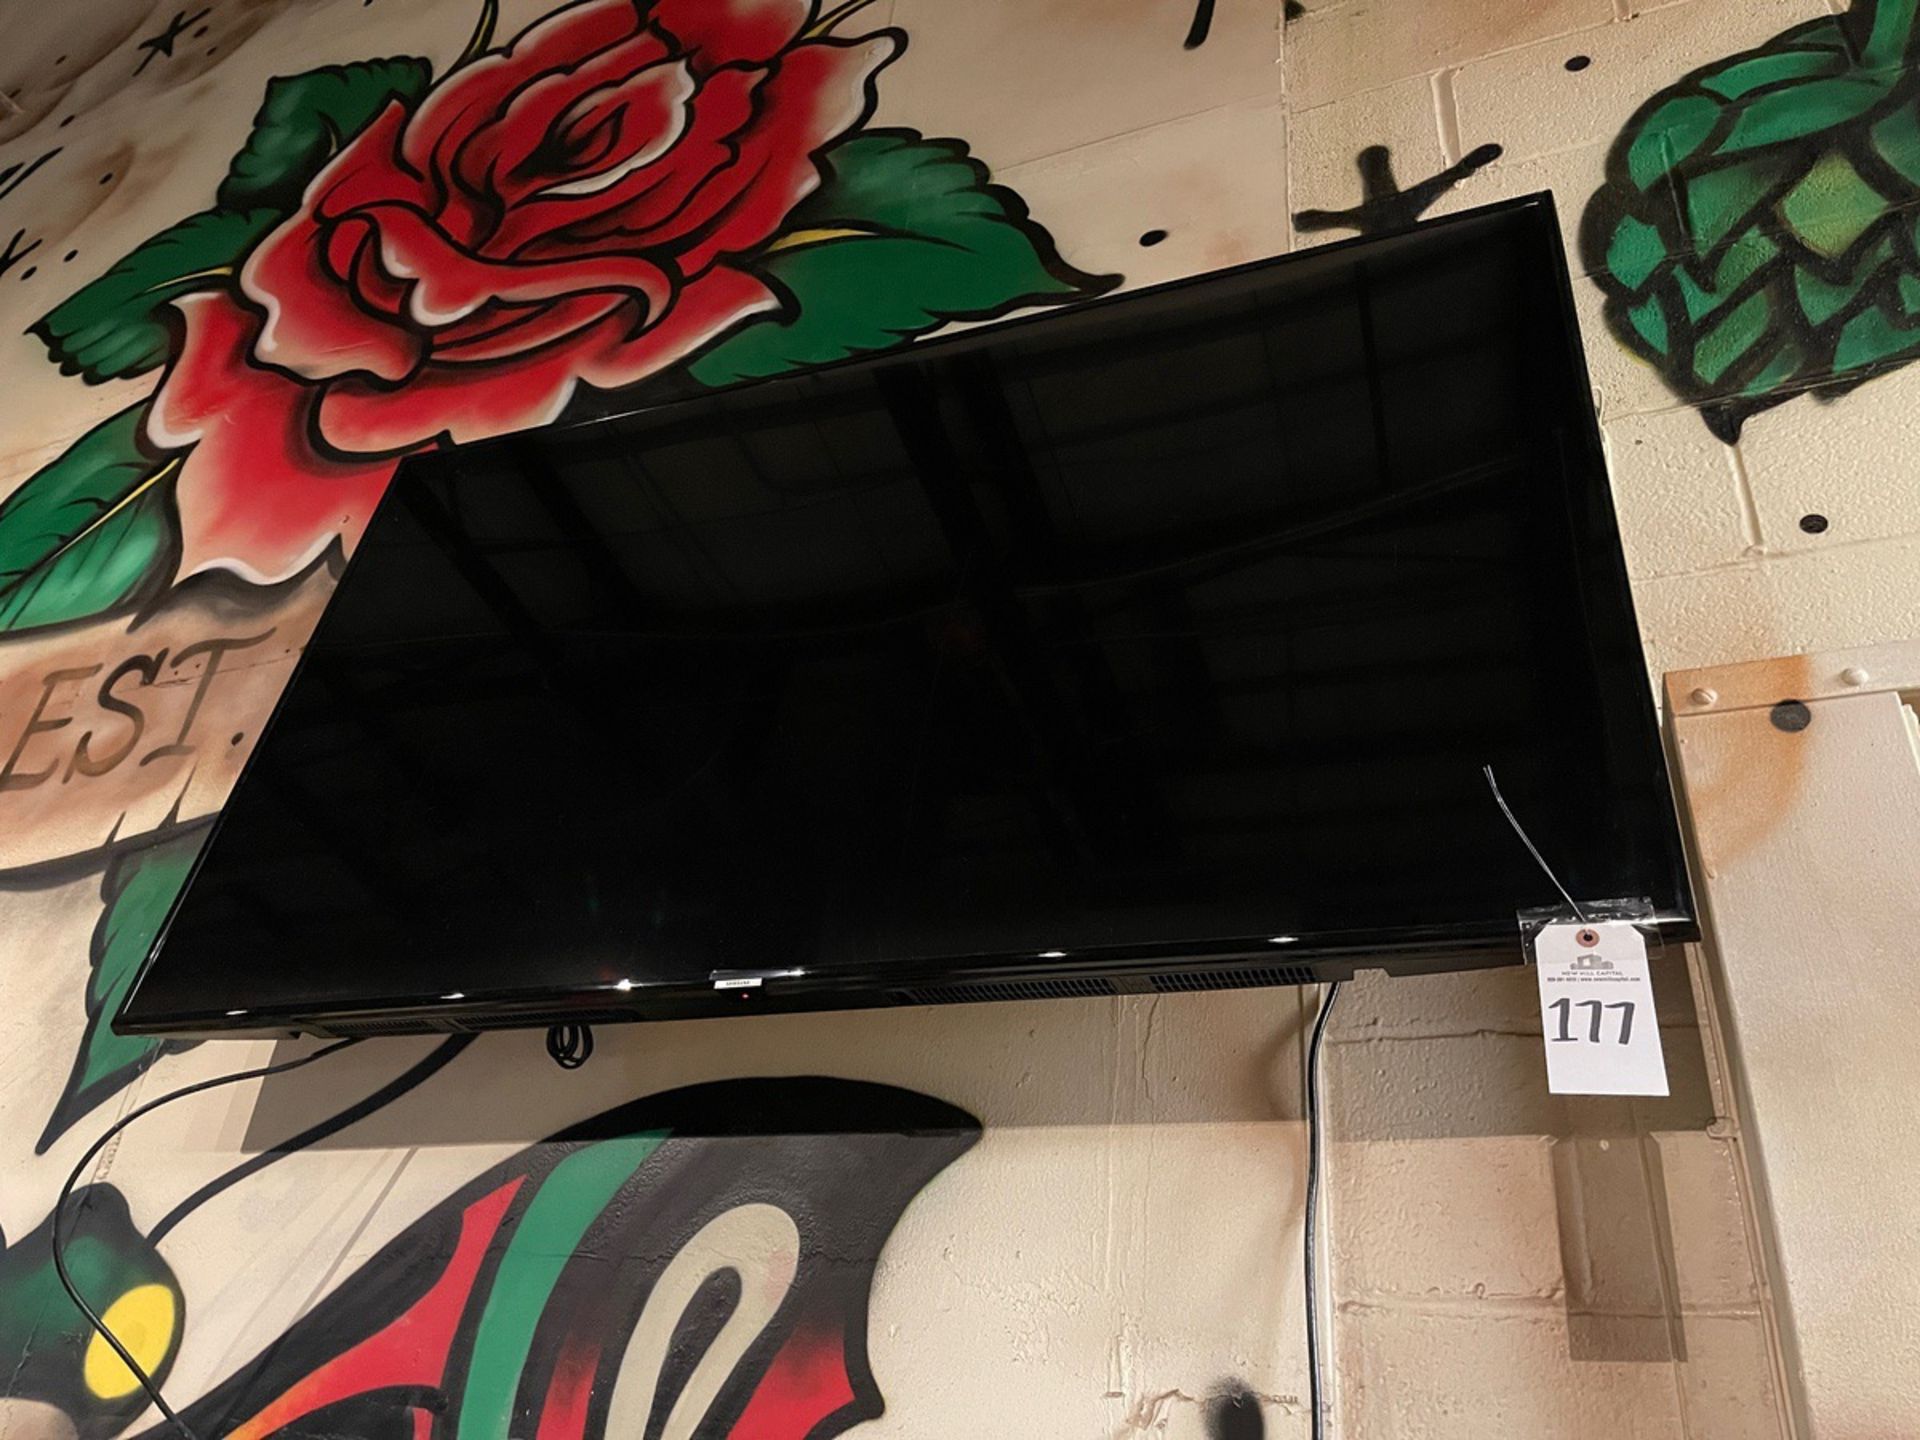 Samsung 55" HDTV | Rig Fee $50